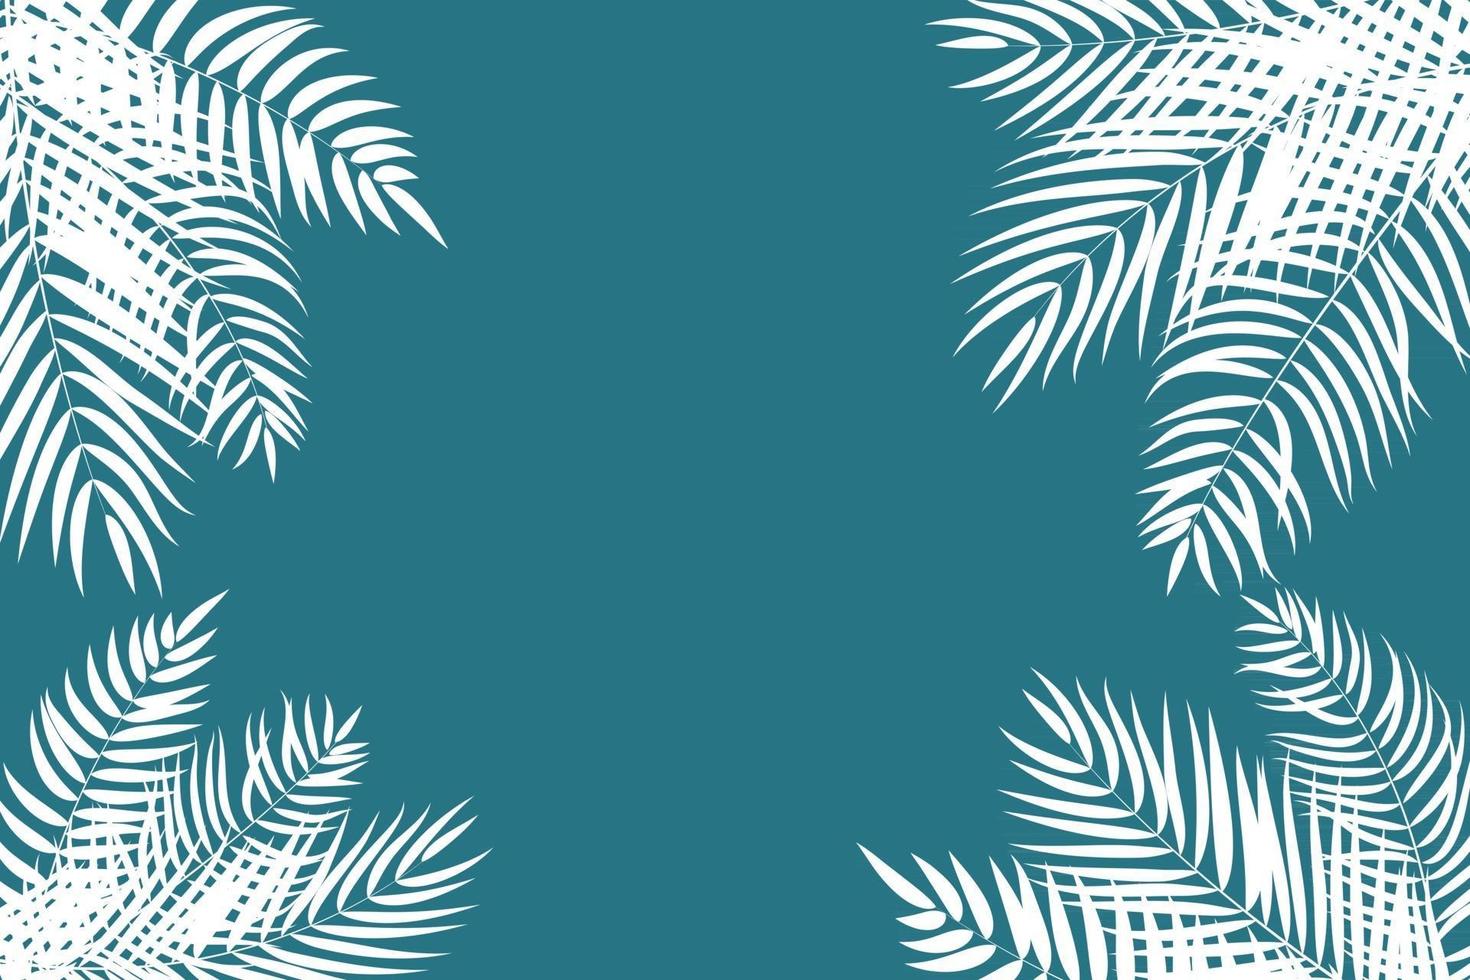 bella palma foglie silhouette sfondo illustrazione vettoriale